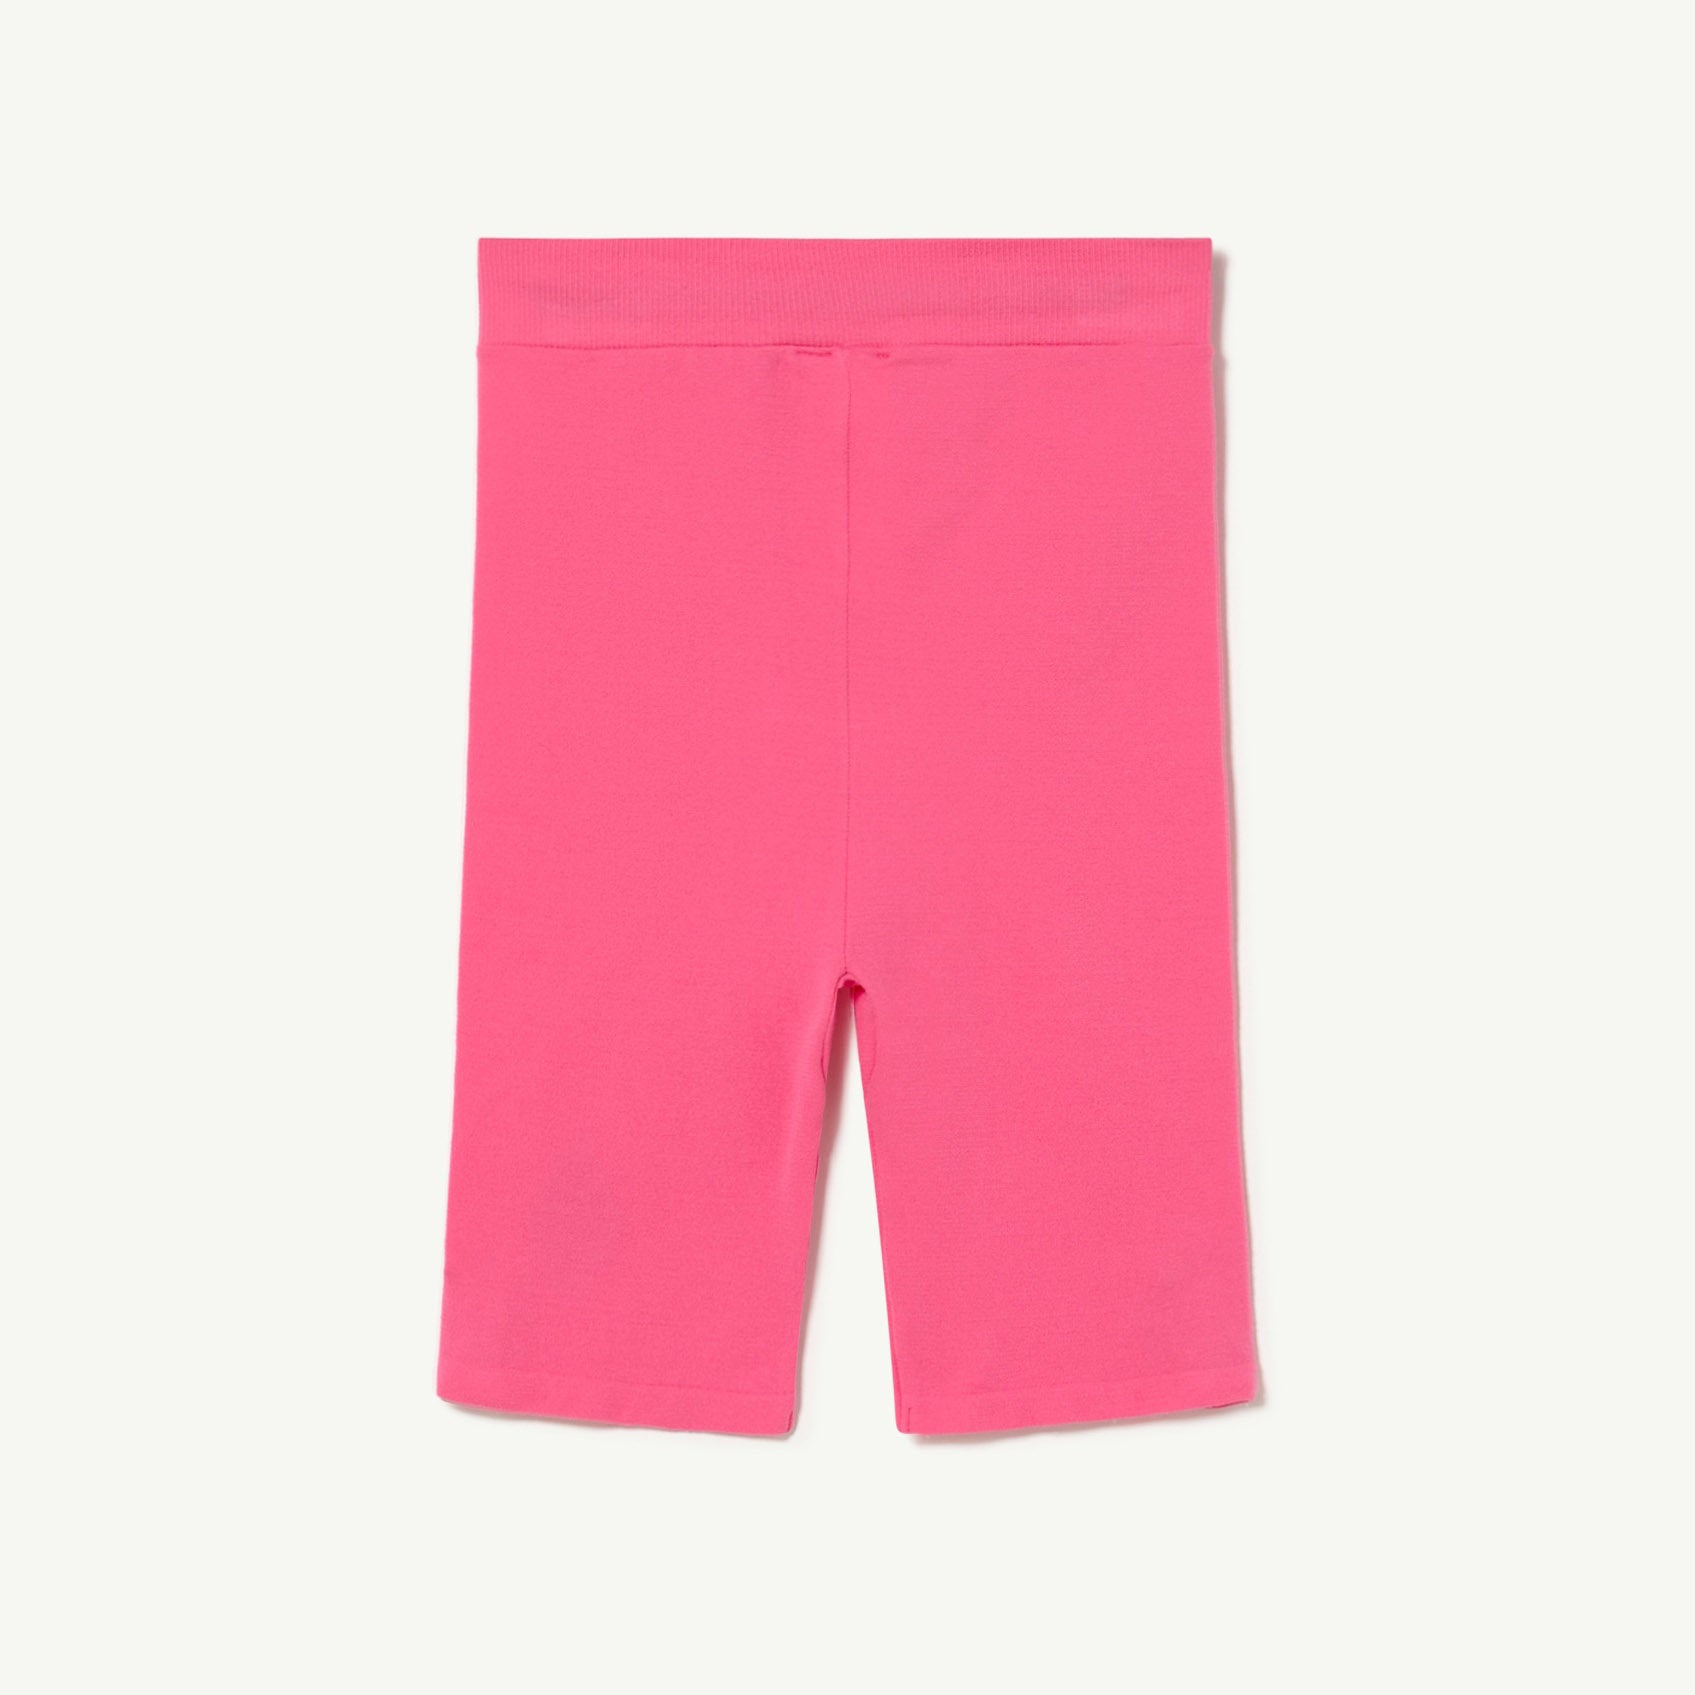 Girls Pink Logo Leggings